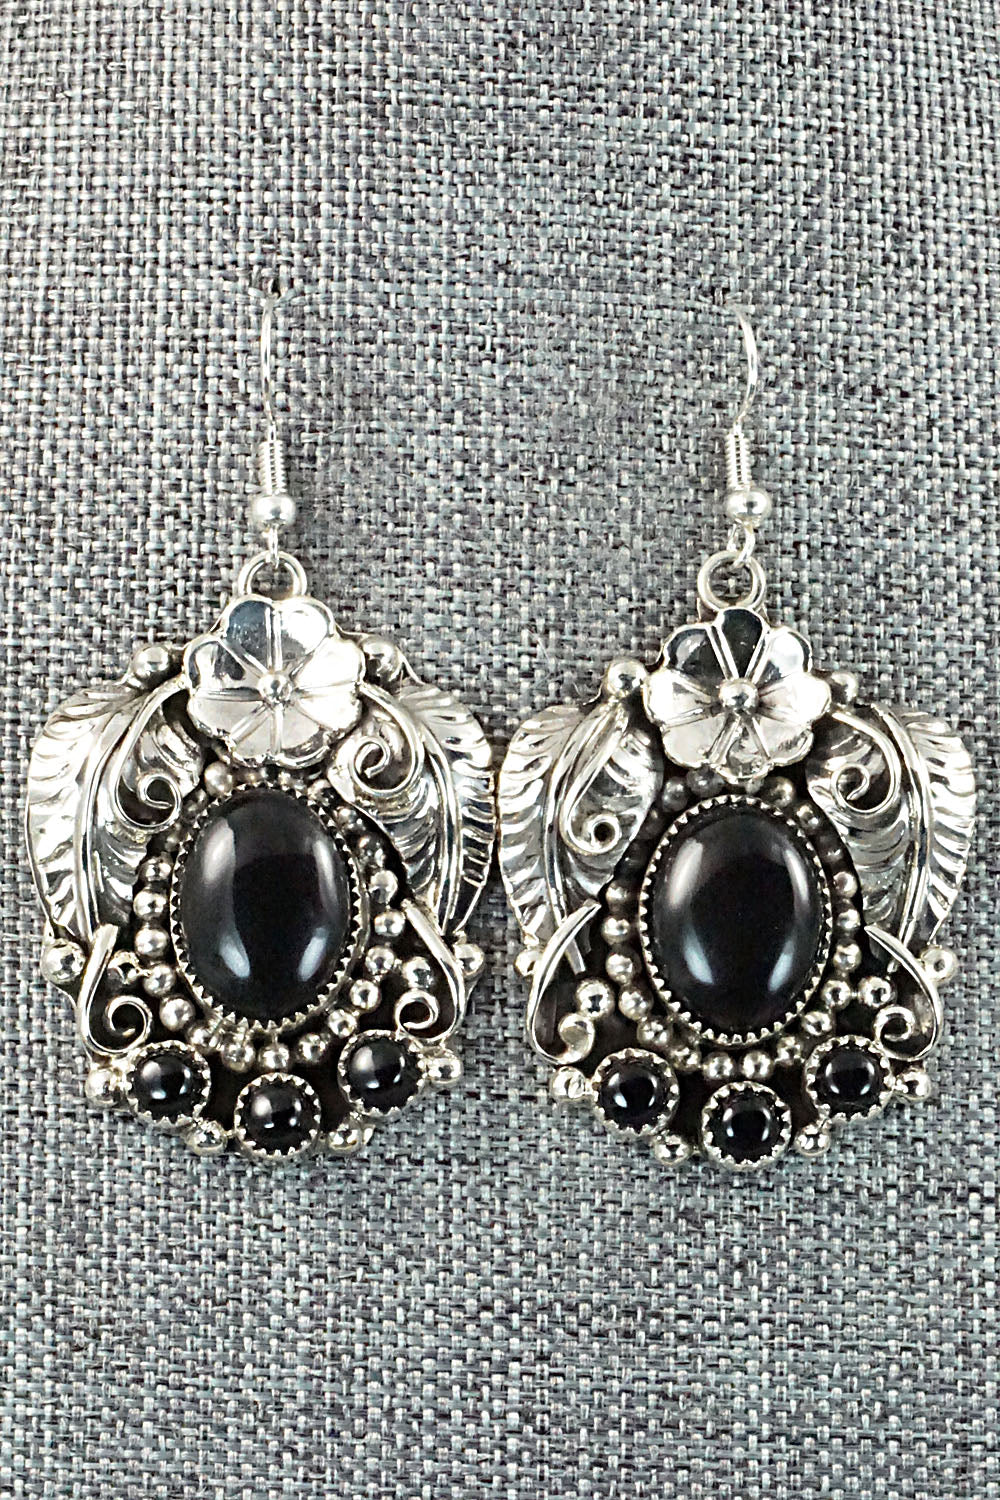 Onyx & Sterling Silver Necklace & Earrings Set - Sandra Parkett